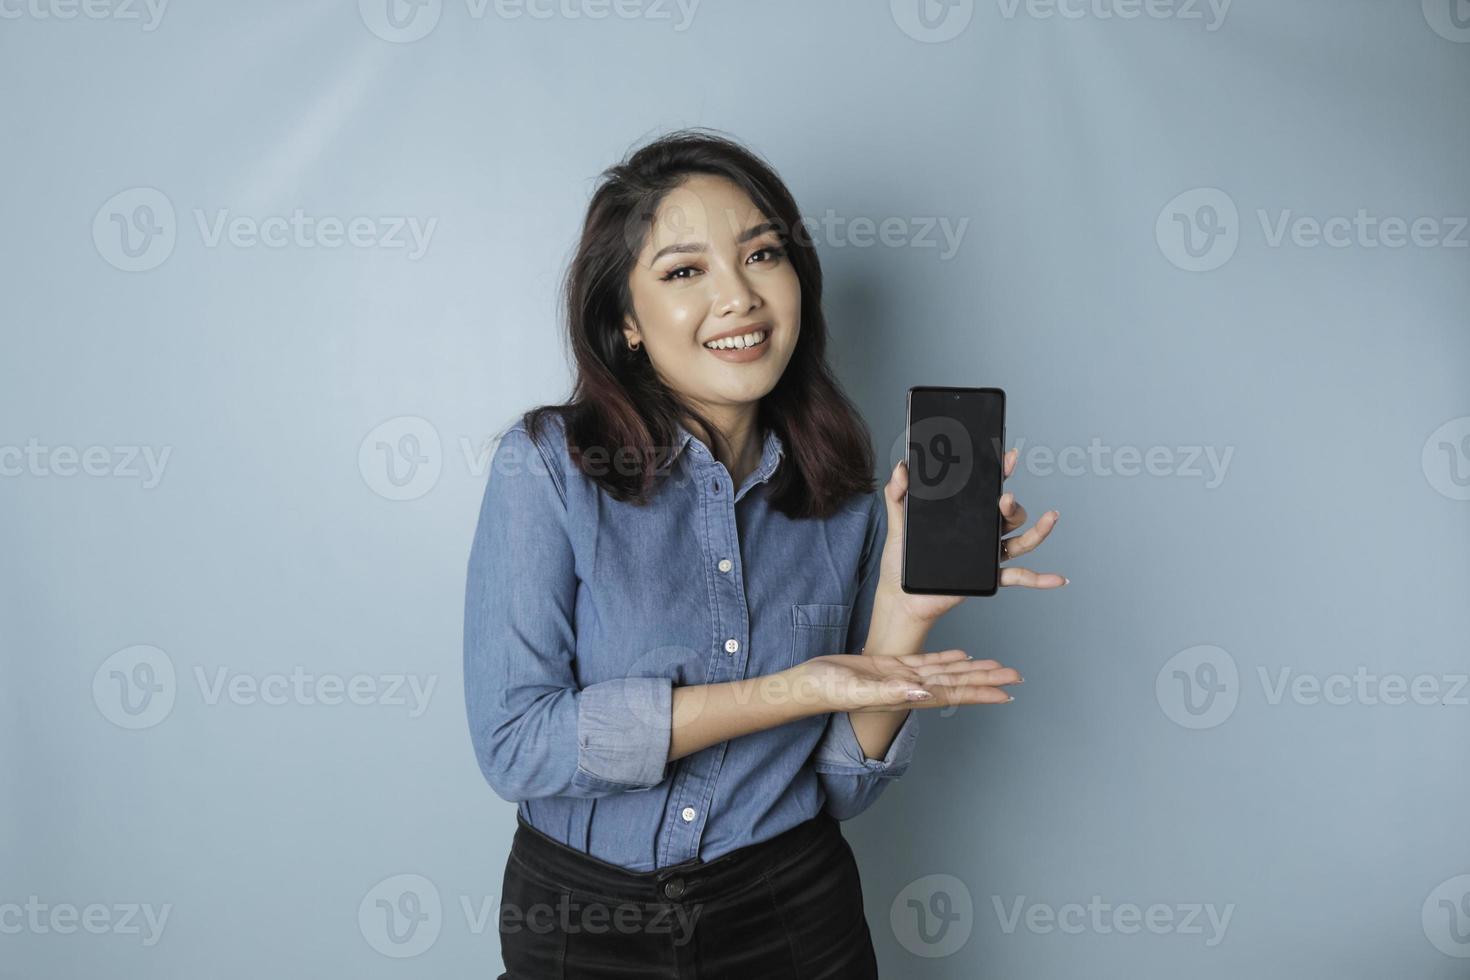 femme asiatique excitée portant une chemise bleue pointant vers l'espace de copie sur son smartphone, isolée par fond bleu photo